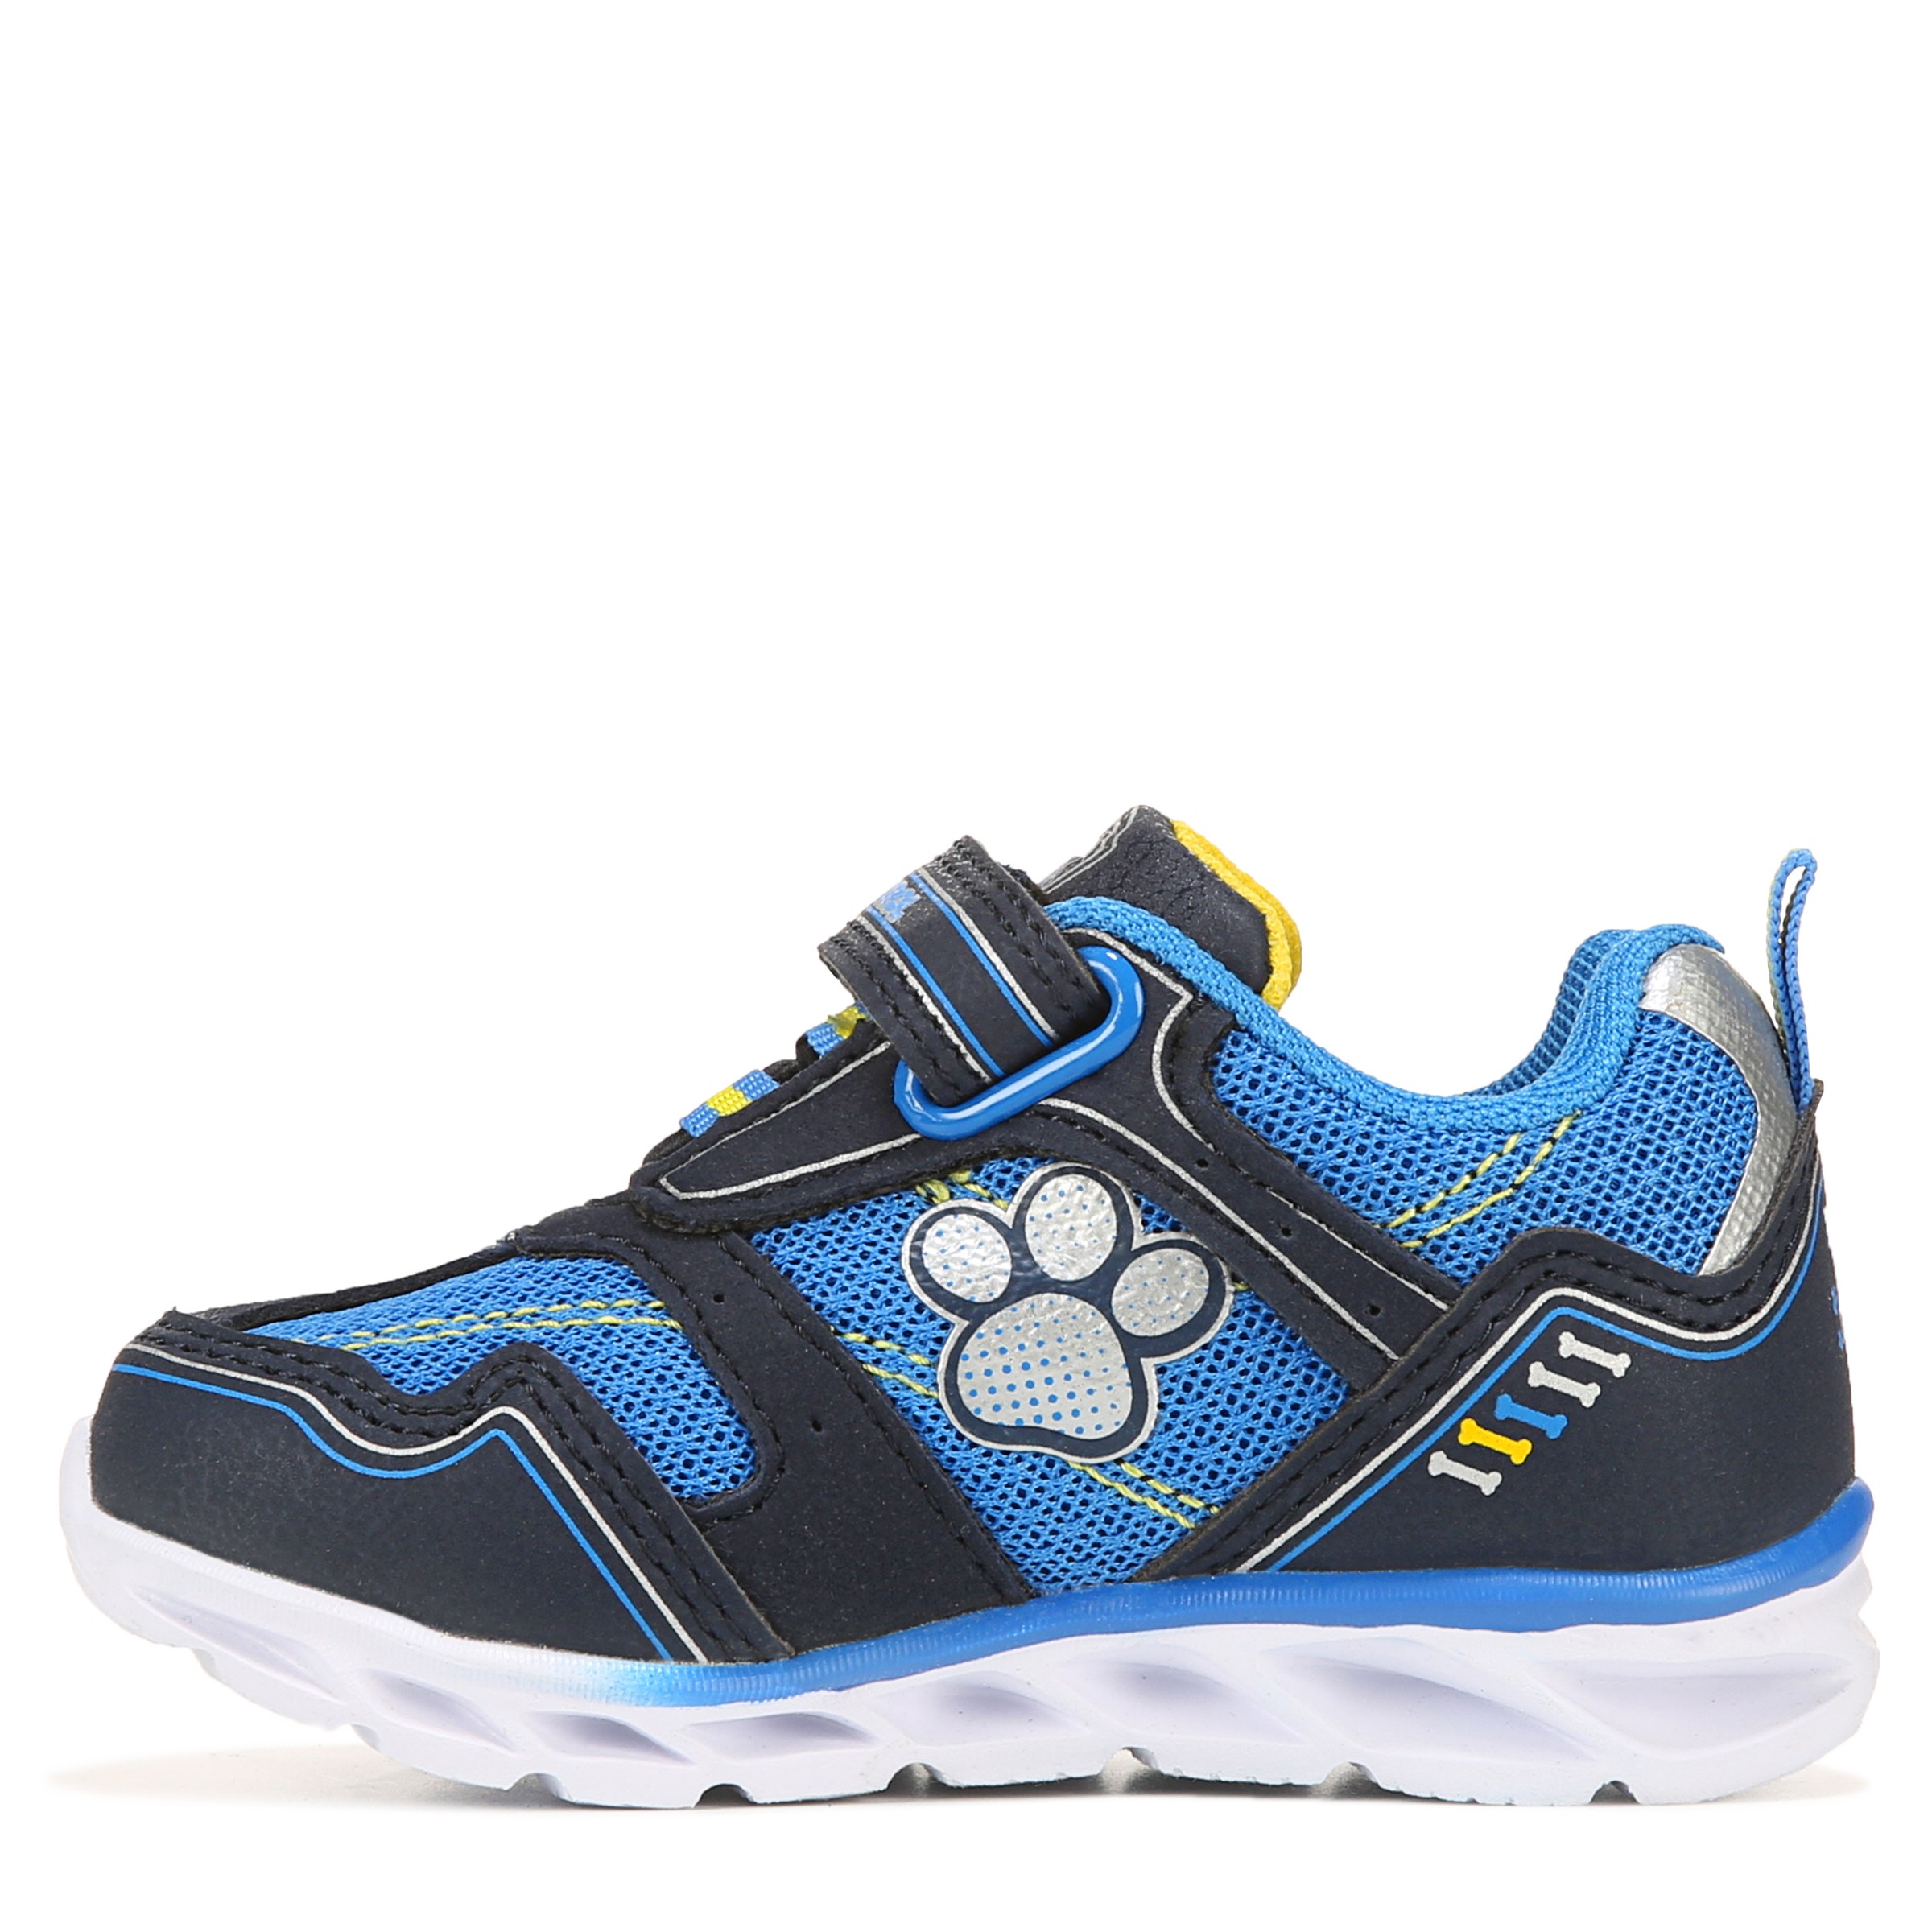 Mens Older Boys Navy Blue Full Shoes Slip On  Lion Motif Slippers Size 3 4 5 6 